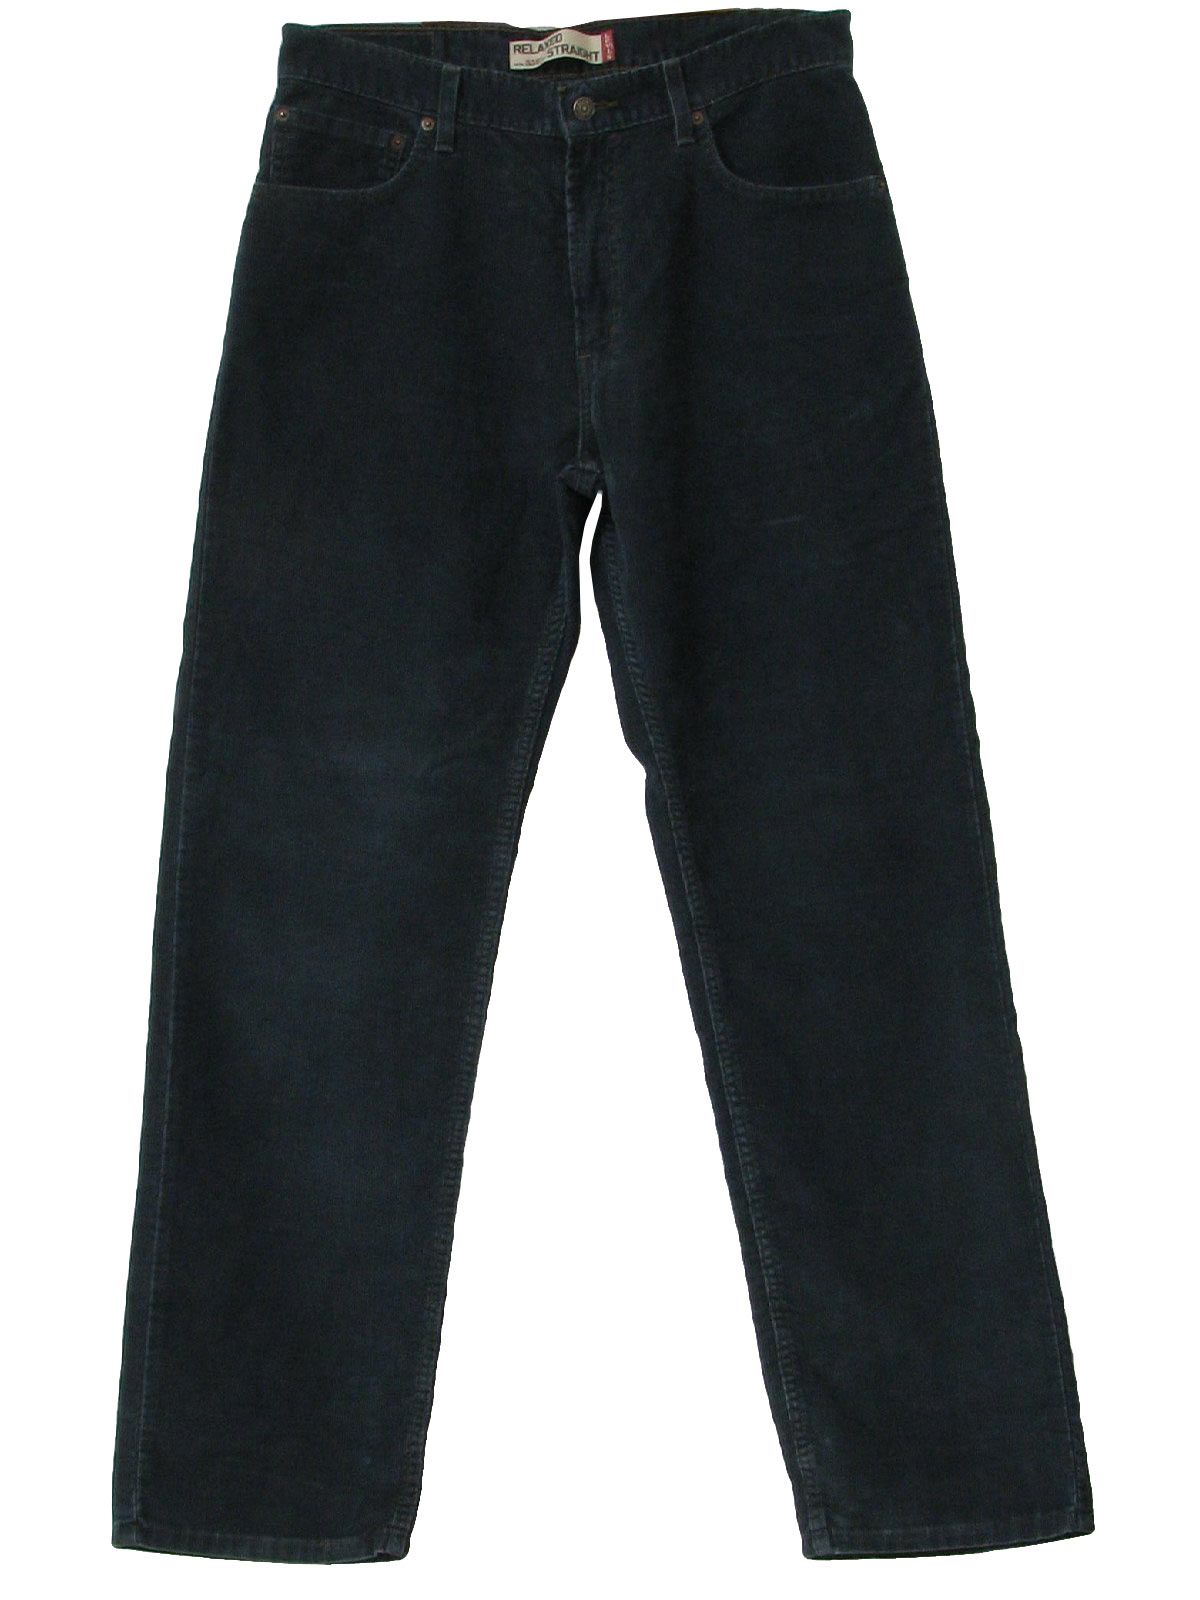 Levis 559 90's Vintage Pants: 90s -Levis 559- Mens slate blue cotton ...